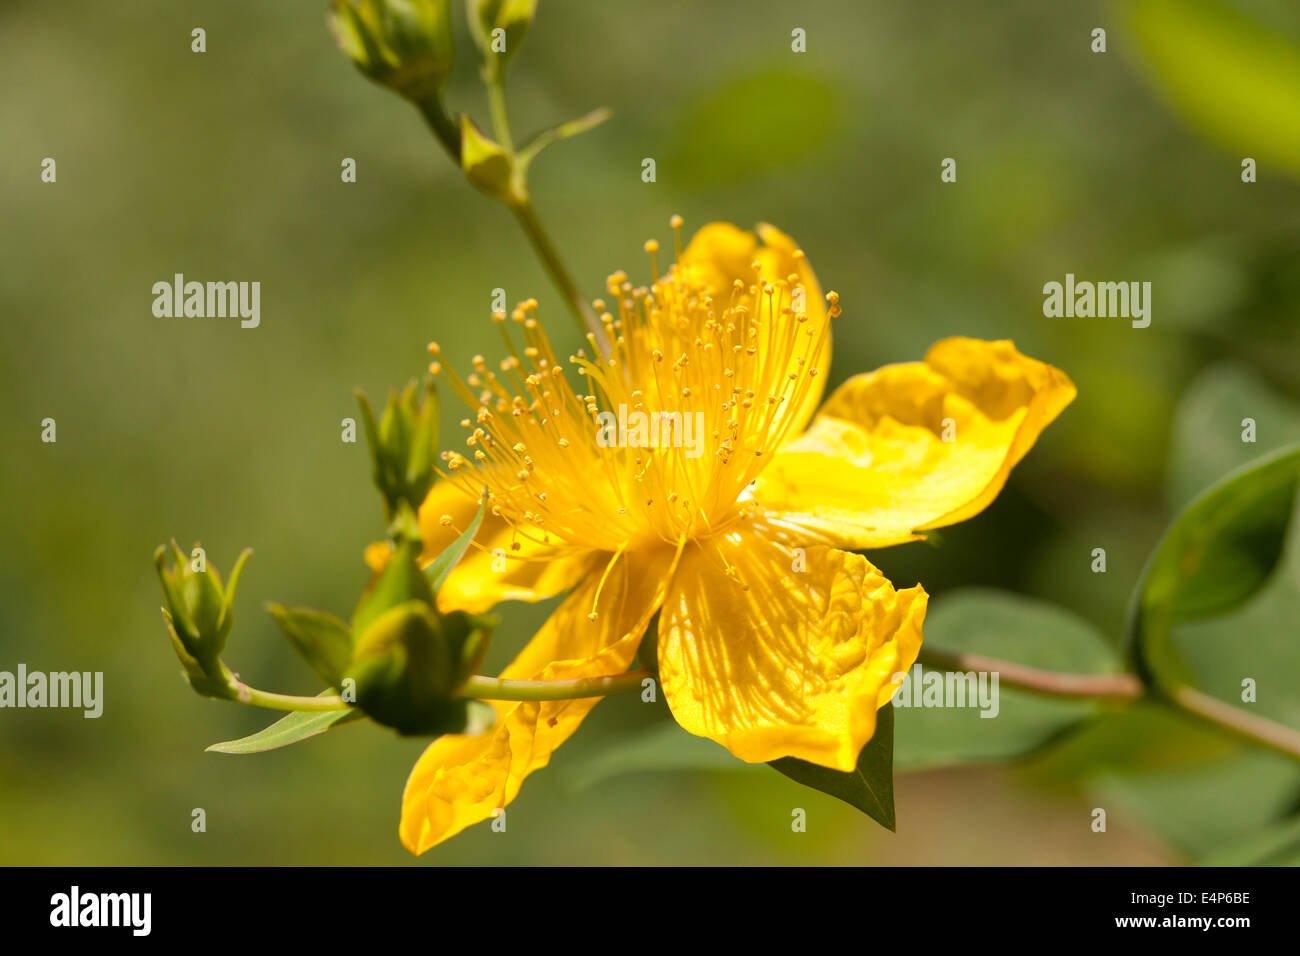 Gelbe Blüte der Rose - von - Sharon strauch Pflanze (Hypericum calycinum), des aka Aaron Bart, Johanniskraut und Jeruselem Stern. - USA Stockfoto